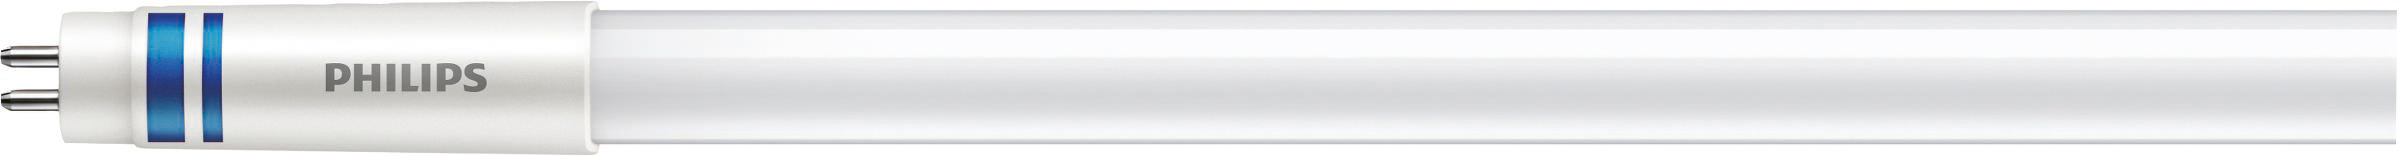 Philips Lighting LED-Tube T5 f. EVG G5, 865, 1149mm MAS LEDtube#74955200 günstig online kaufen